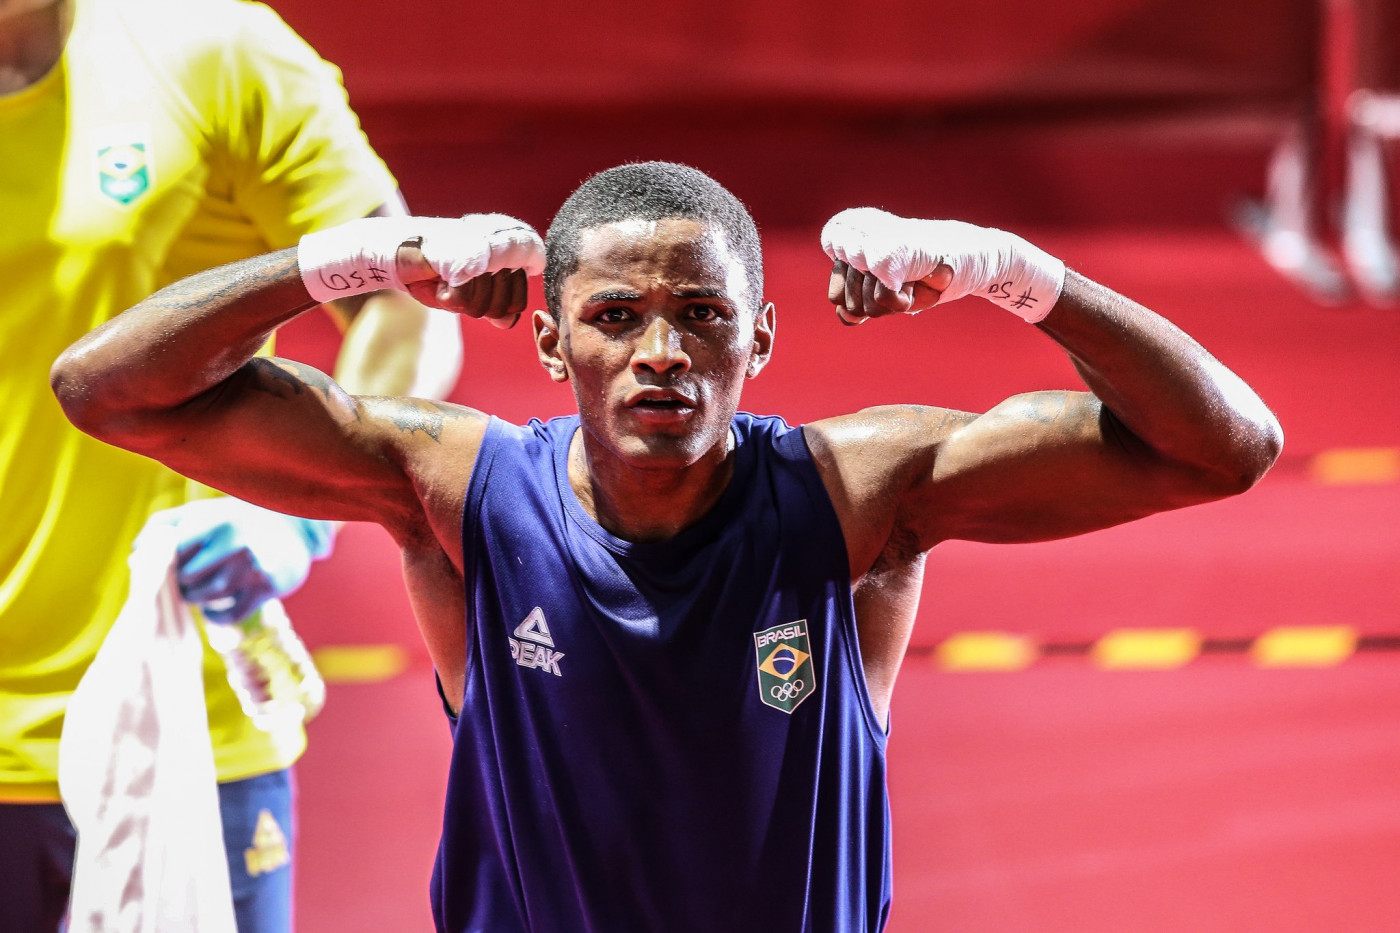 Wanderson Oliveira está nas quartas de final do boxe nas Olimpíadas